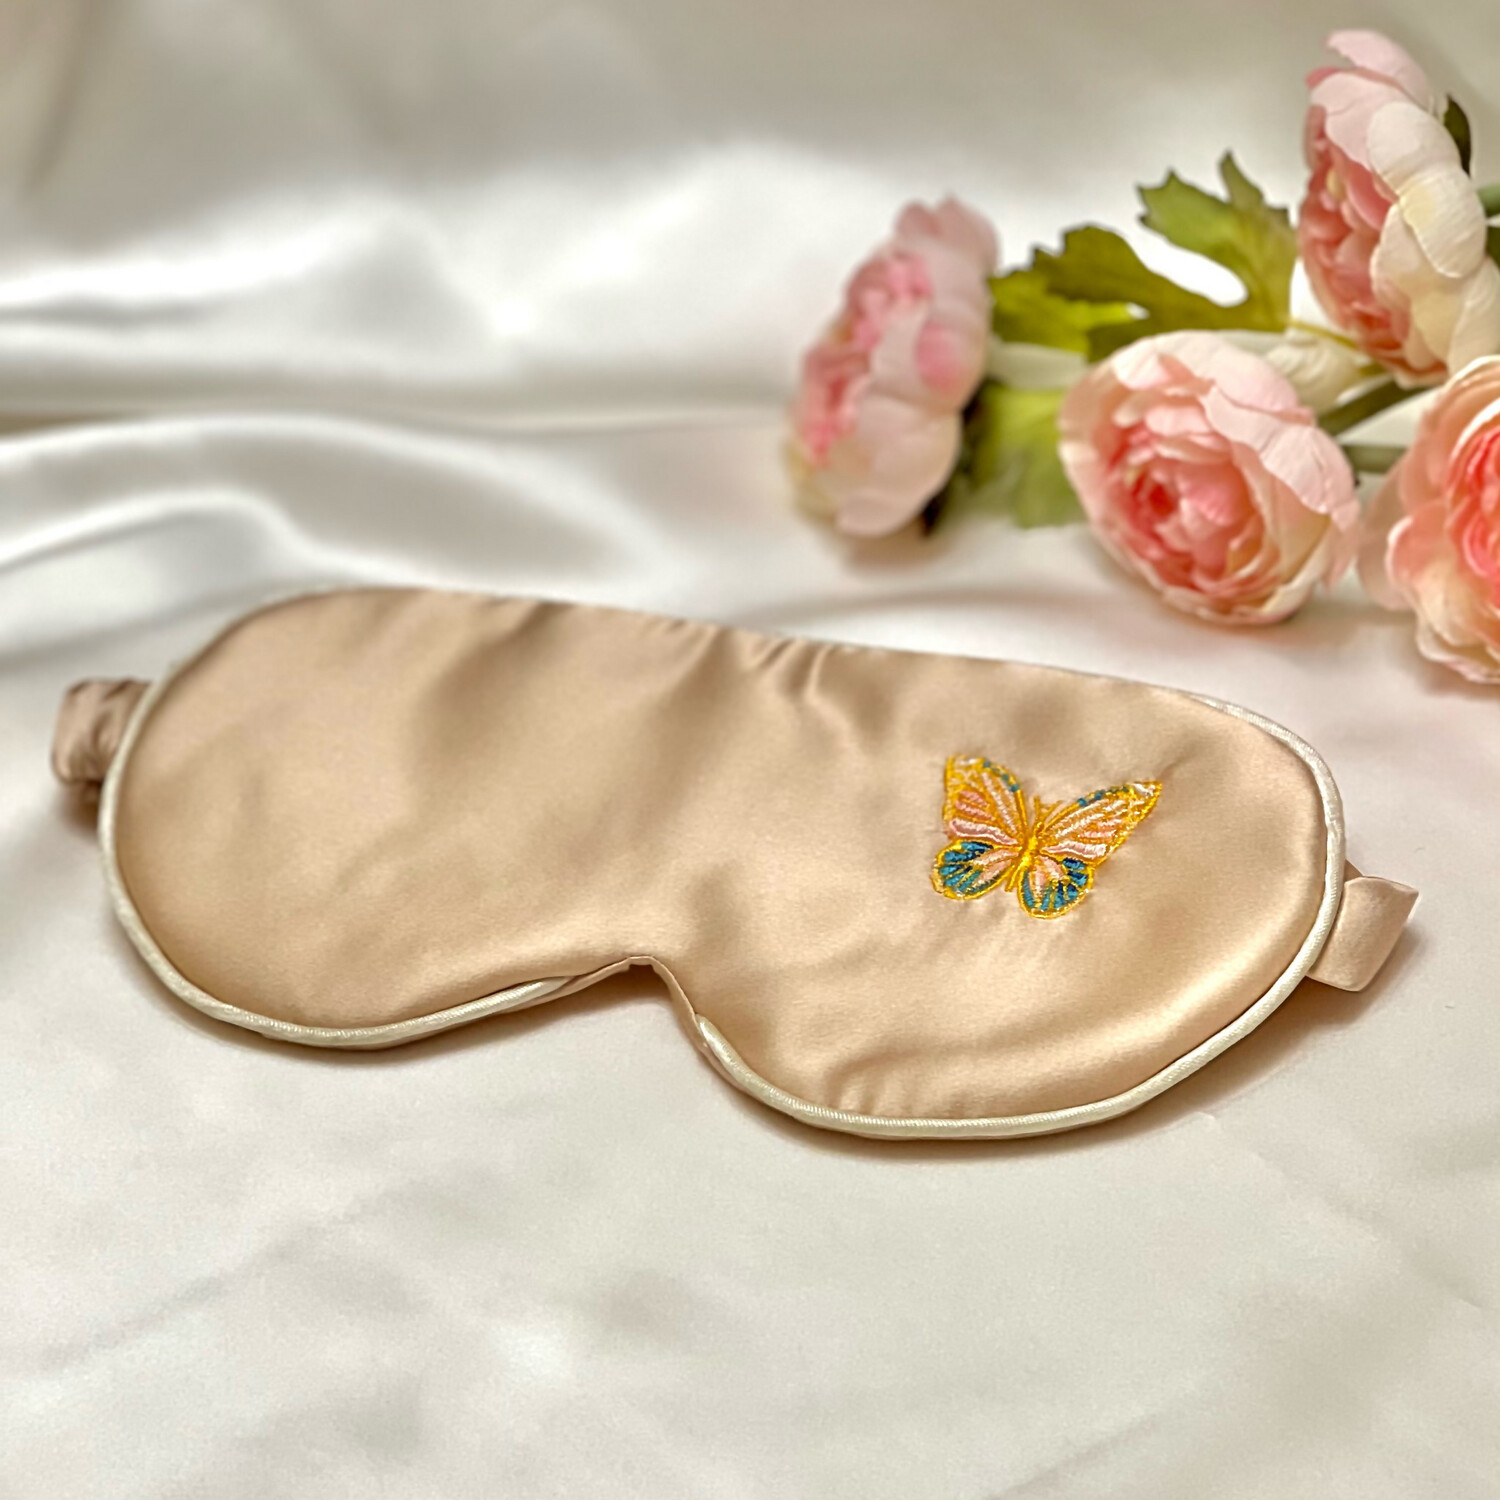 Маска для сна «Шелк в шёлке» с вышивкой БАБОЧКА 4 слоя шёлка, с регулировкой резиночки